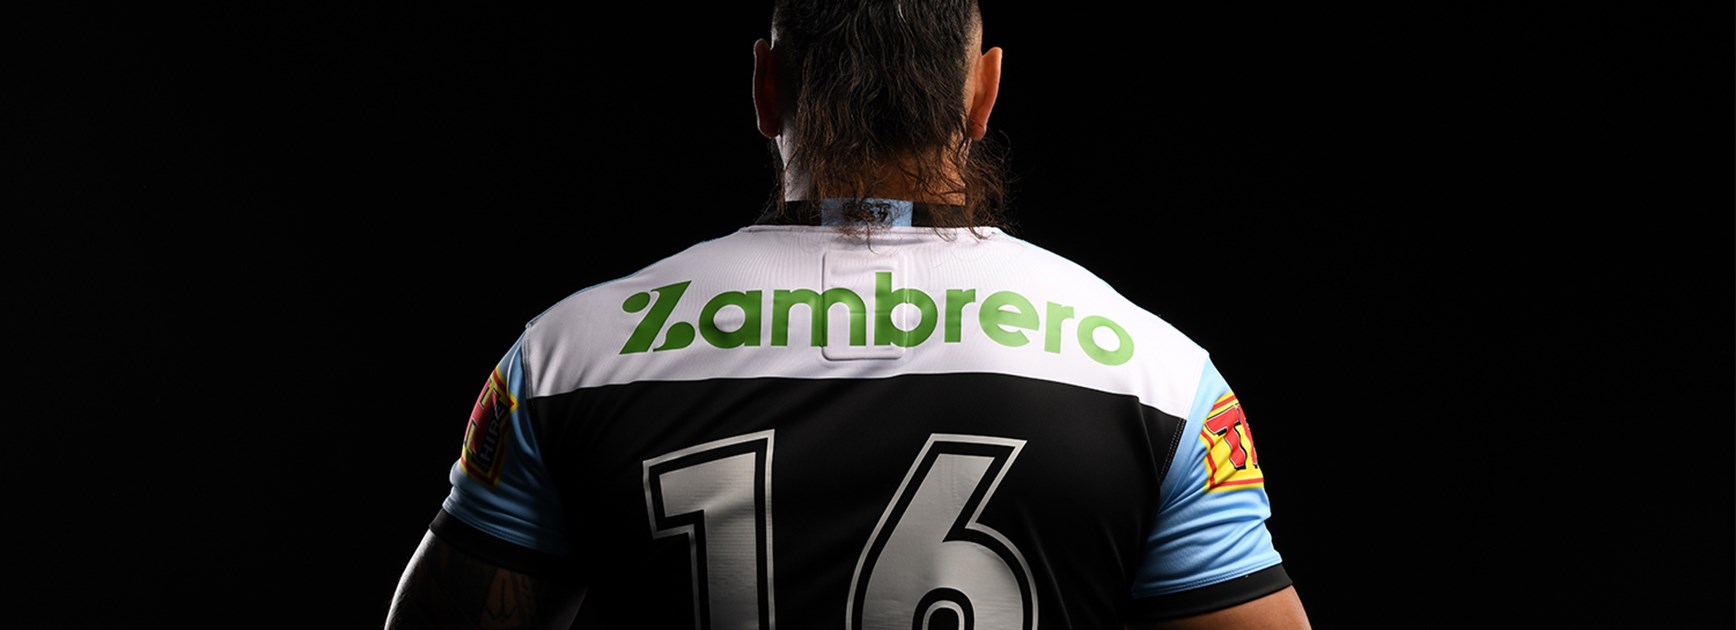 Zambrero has the Sharks back